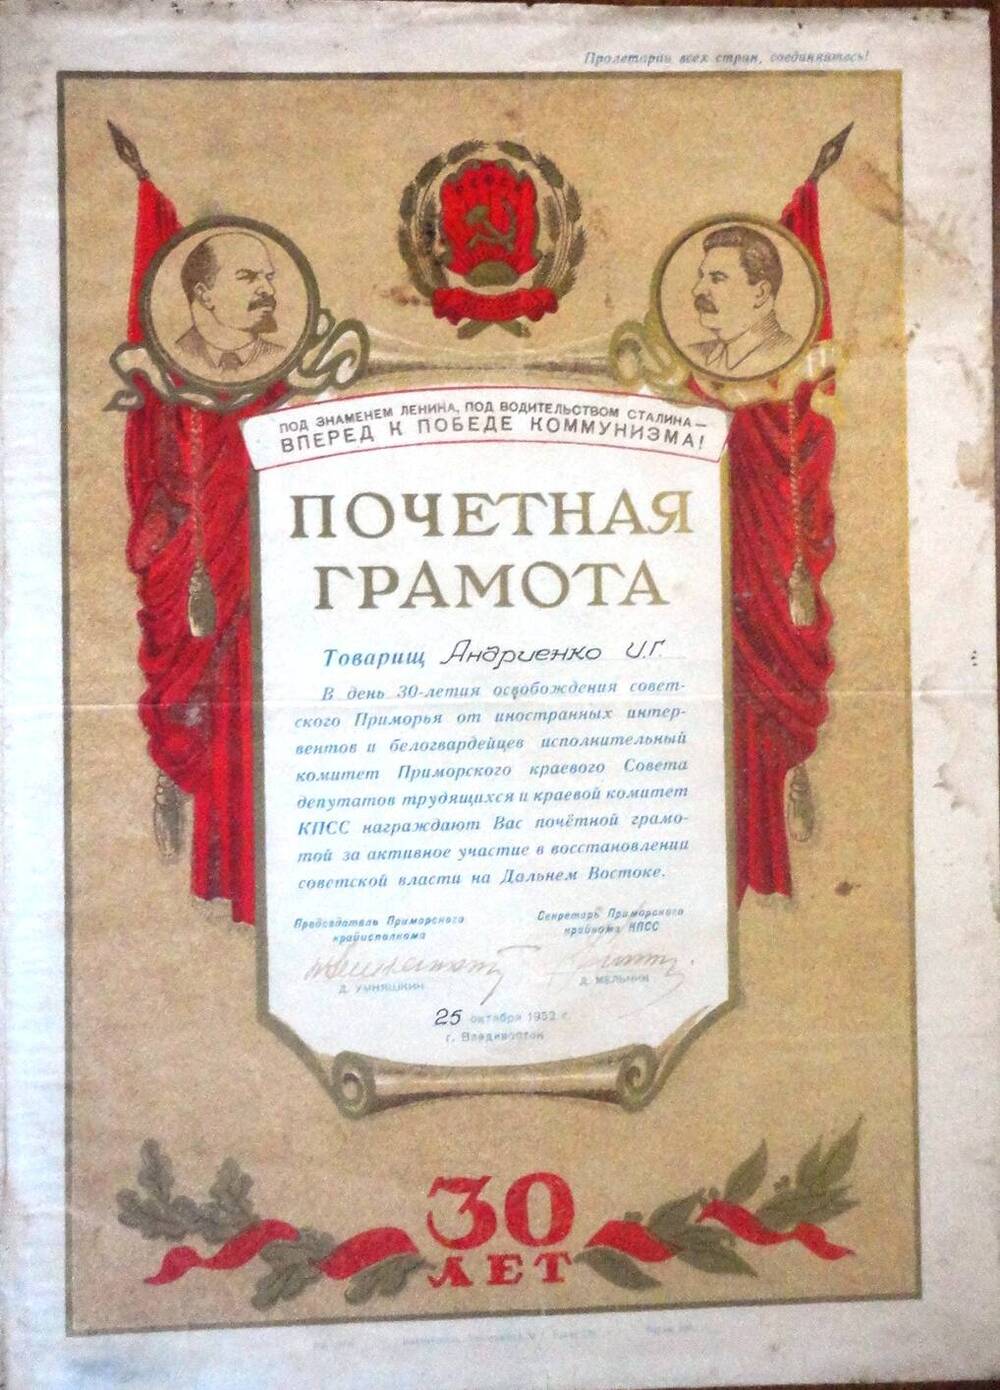 Почётная грамота Андриенко И.Г. в честь 30-летия освобождения Приморья от белогвардейцев